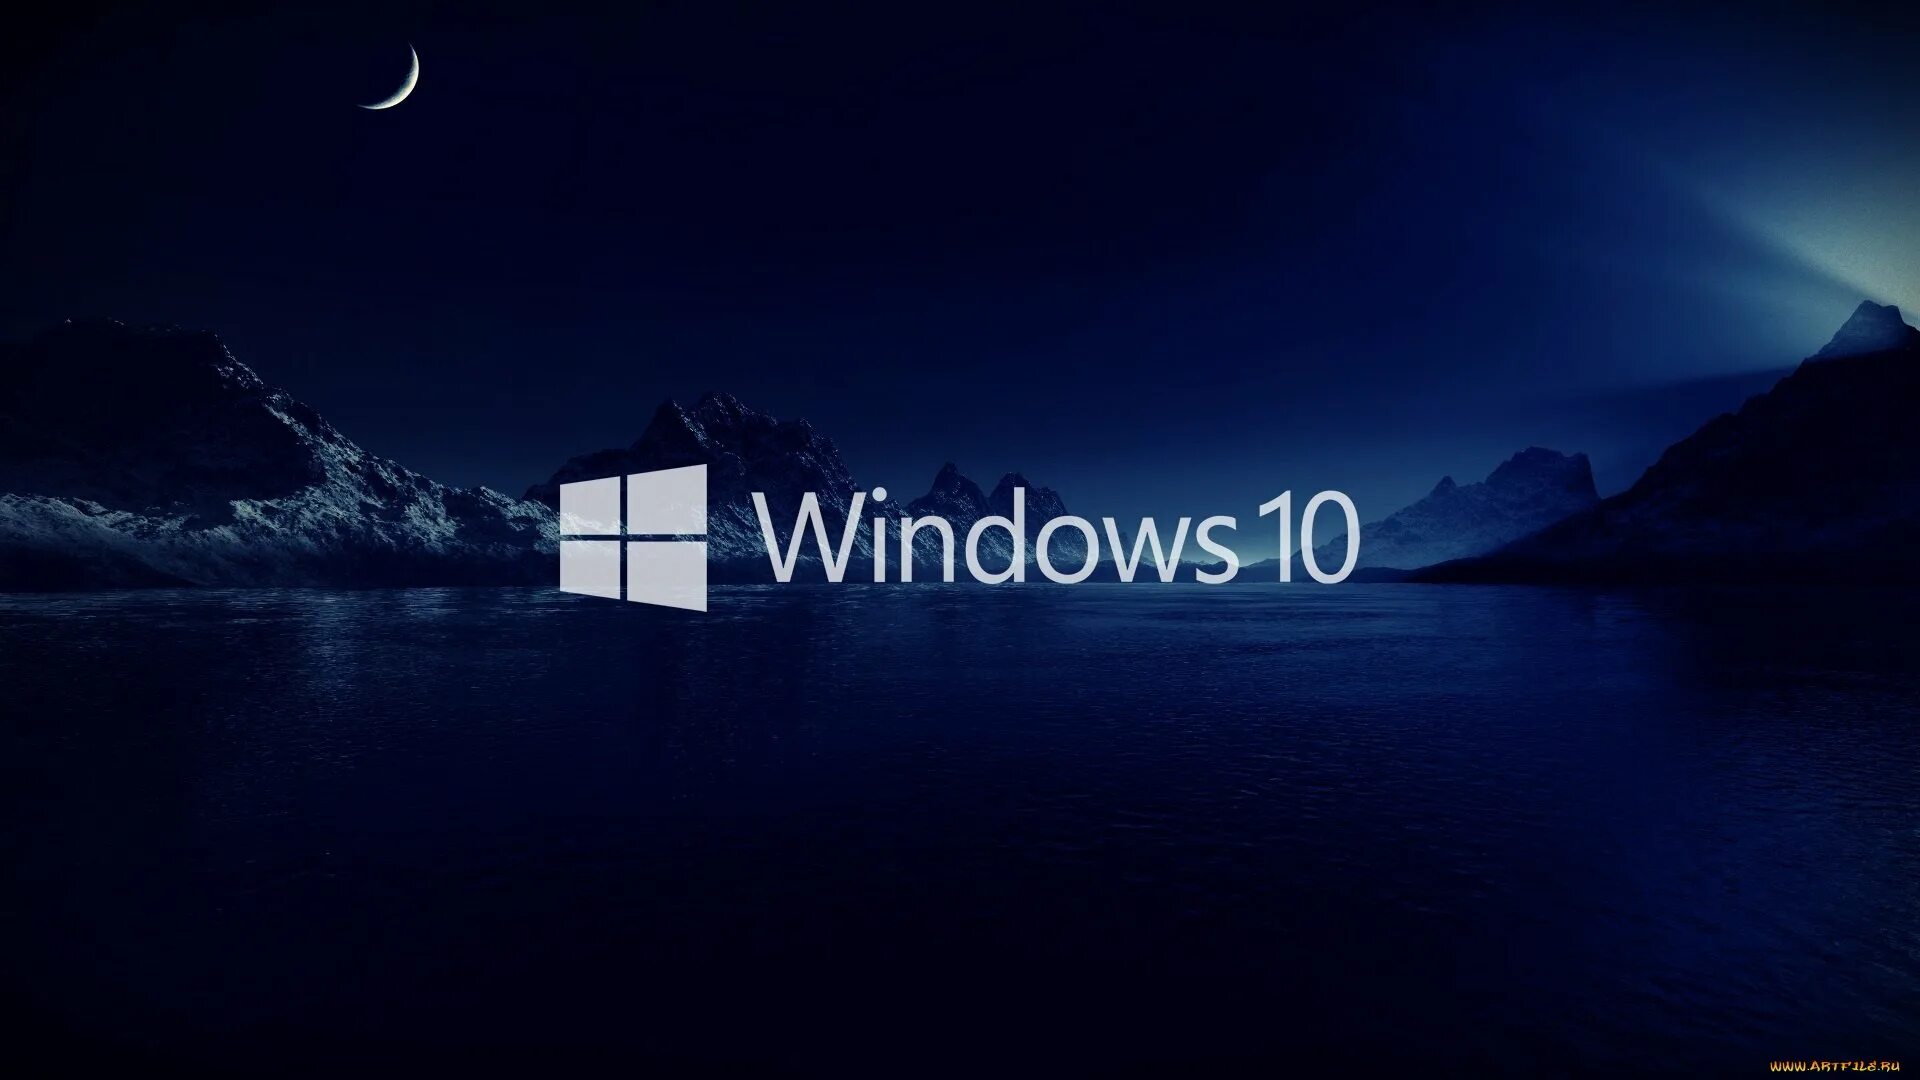 Виндокюус 10. Заставка виндовс 10. Картинки Windows 10. Фоновое изображение Windows 10.